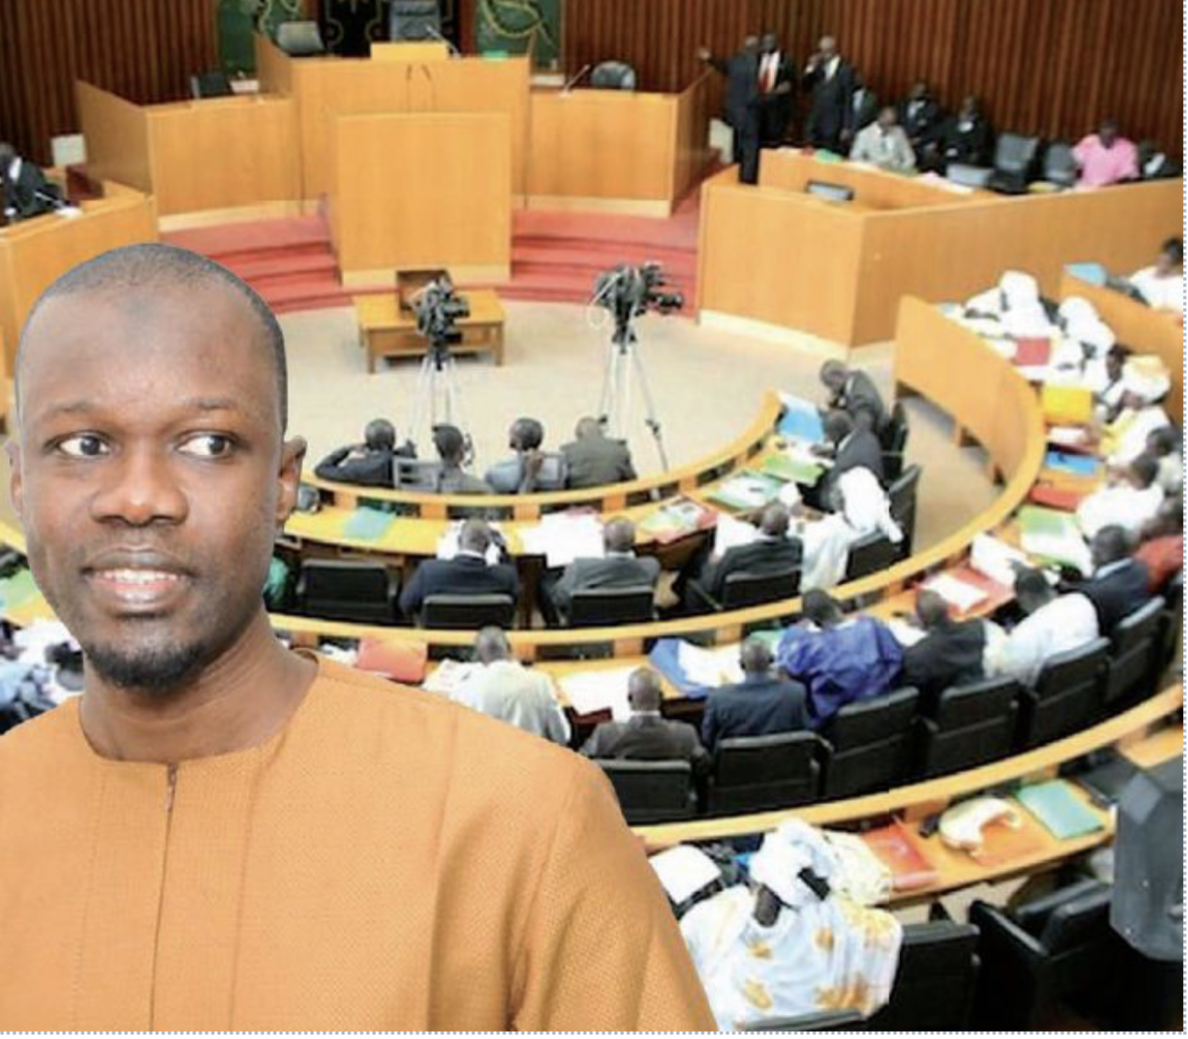 Procédure pour la levée de l’immunité parlementaire du député Ousmane Sonko : La décision prise par l’Assemblée nationale.